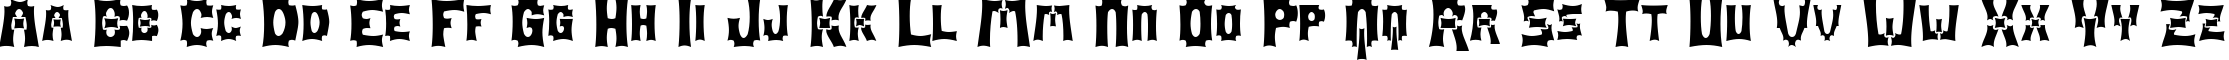 Пример написания английского алфавита шрифтом Mage